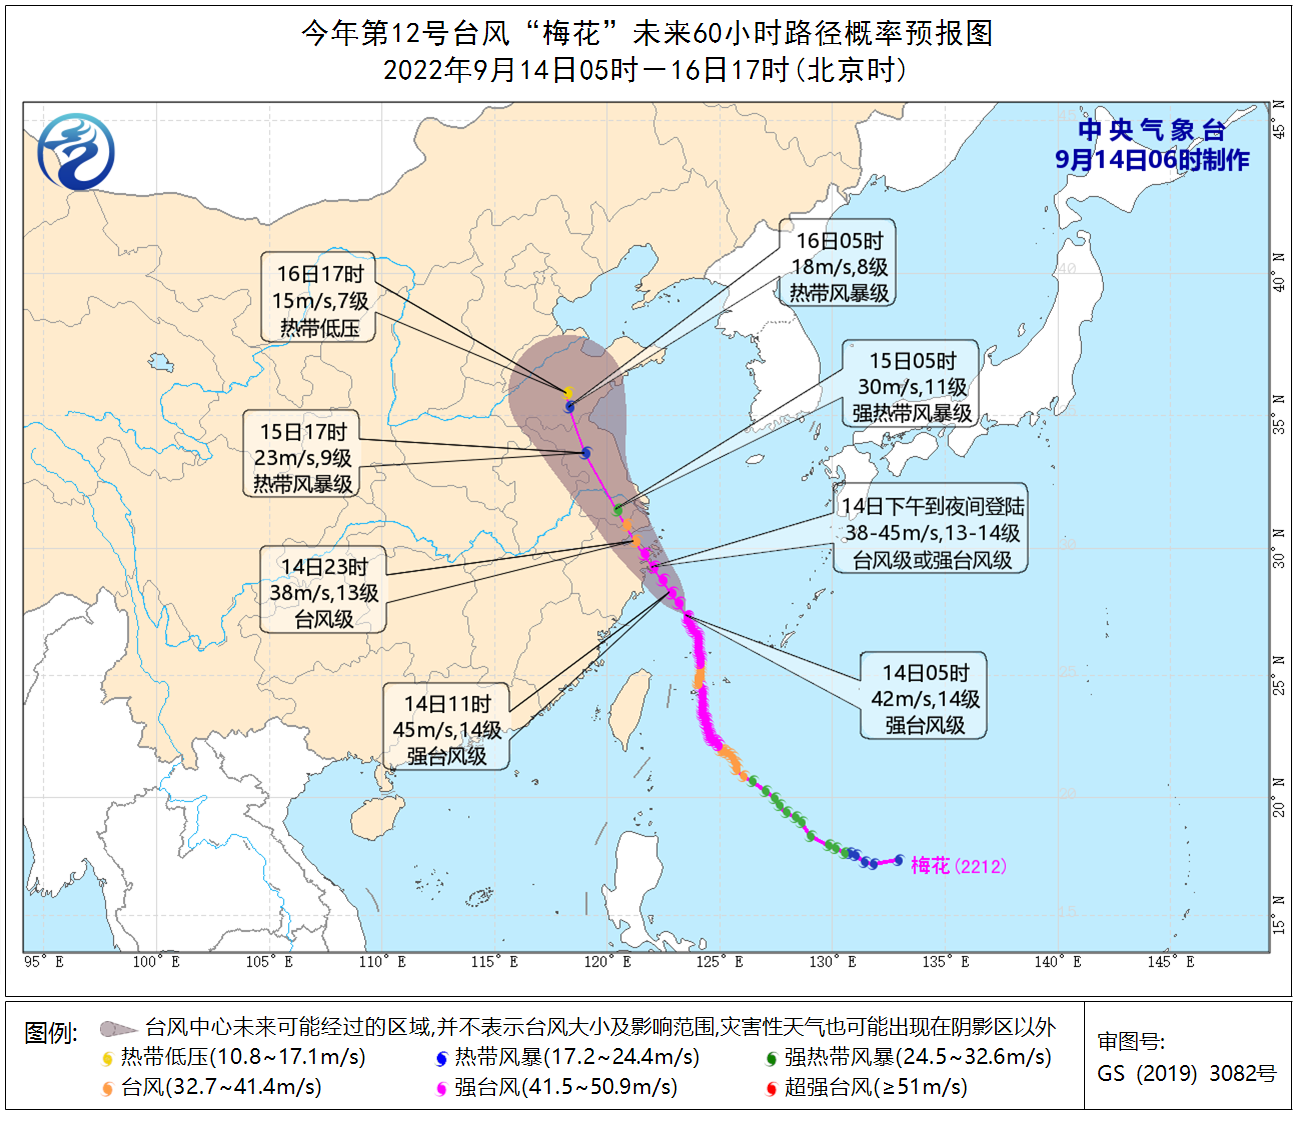 山东发布台风蓝色预警并继续发布海上大风黄色预警